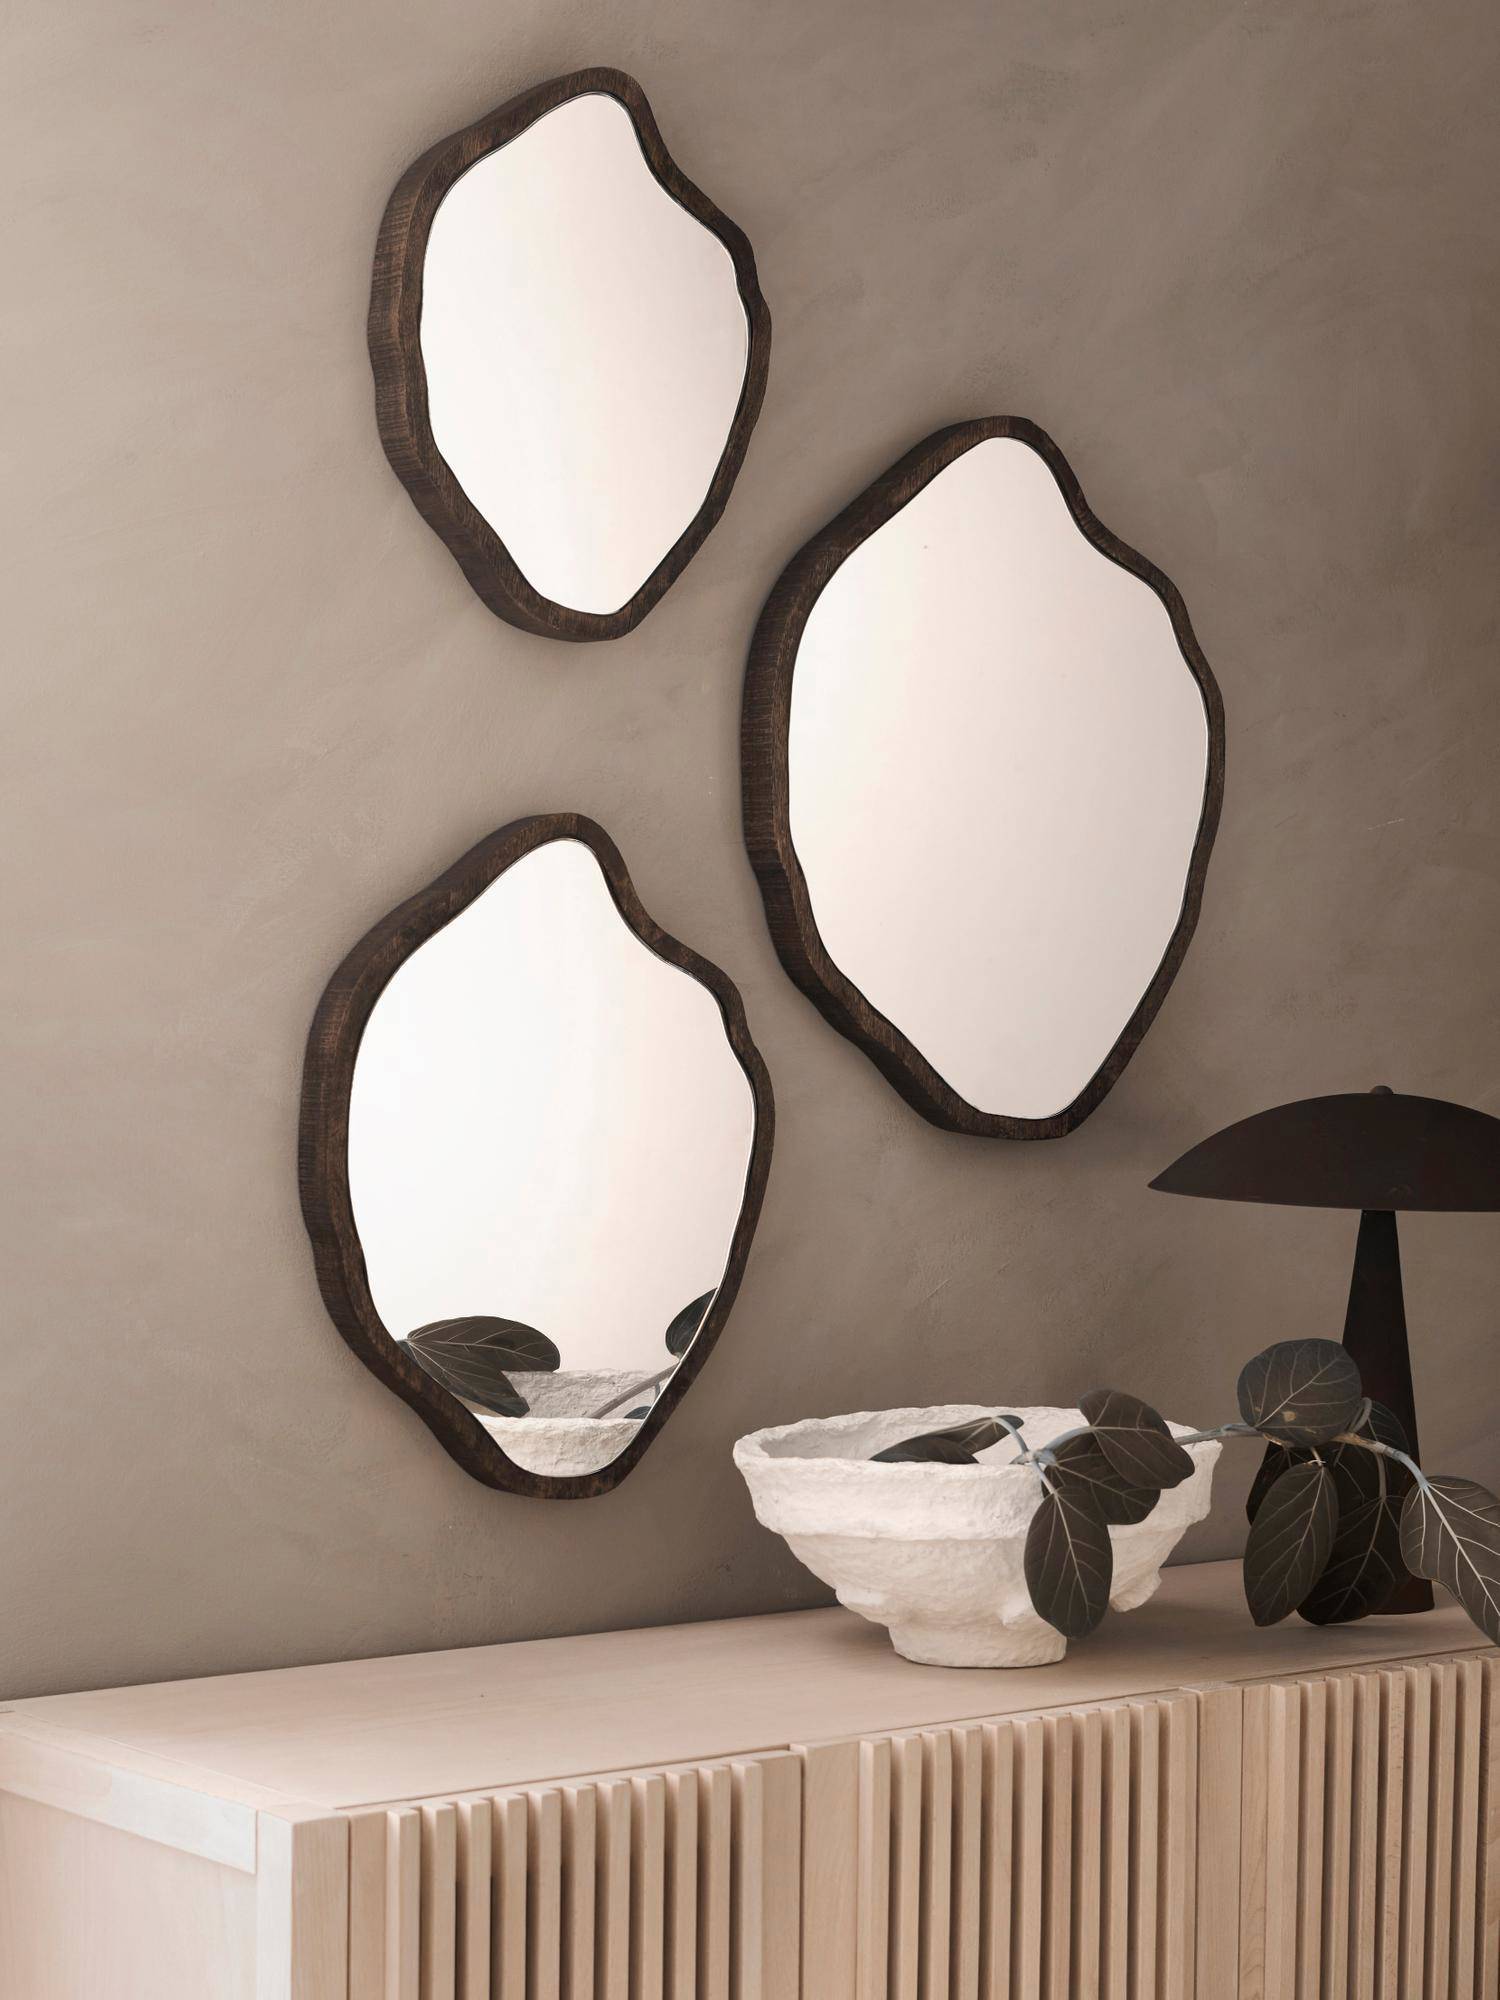 Consola blanca y tres espejos con formas redondeadas